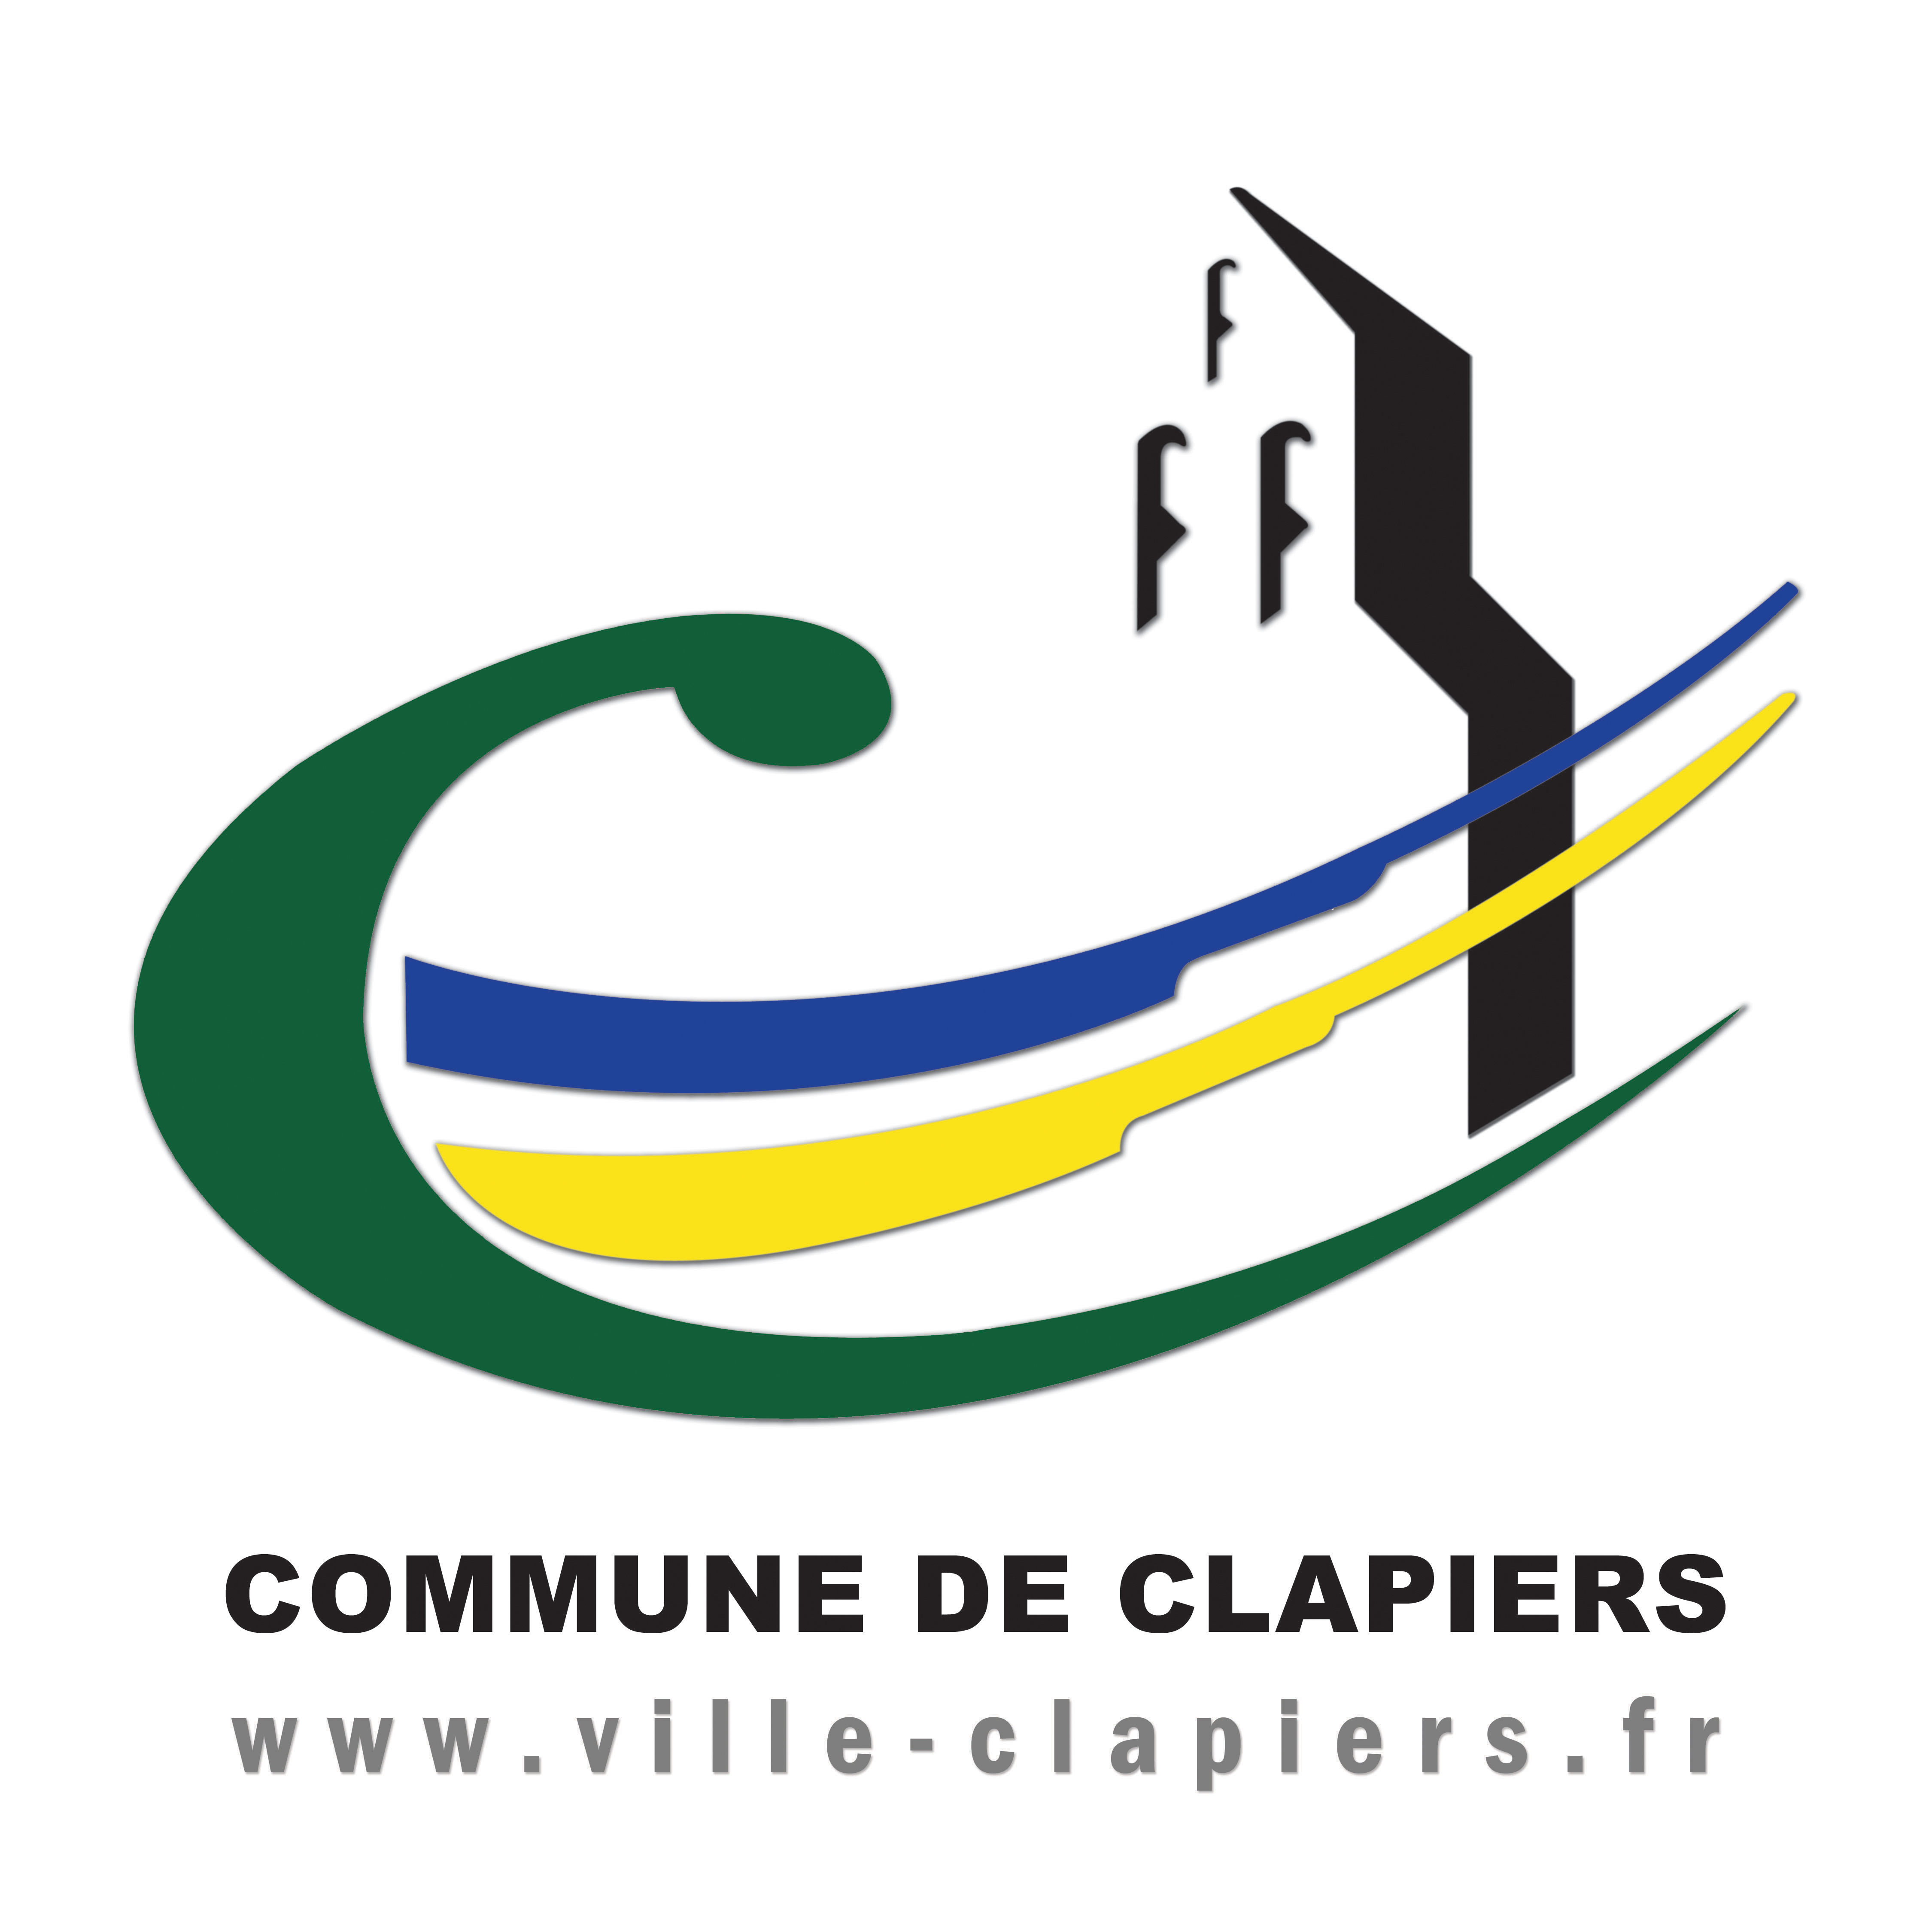 Ville de Clapiers (logo)